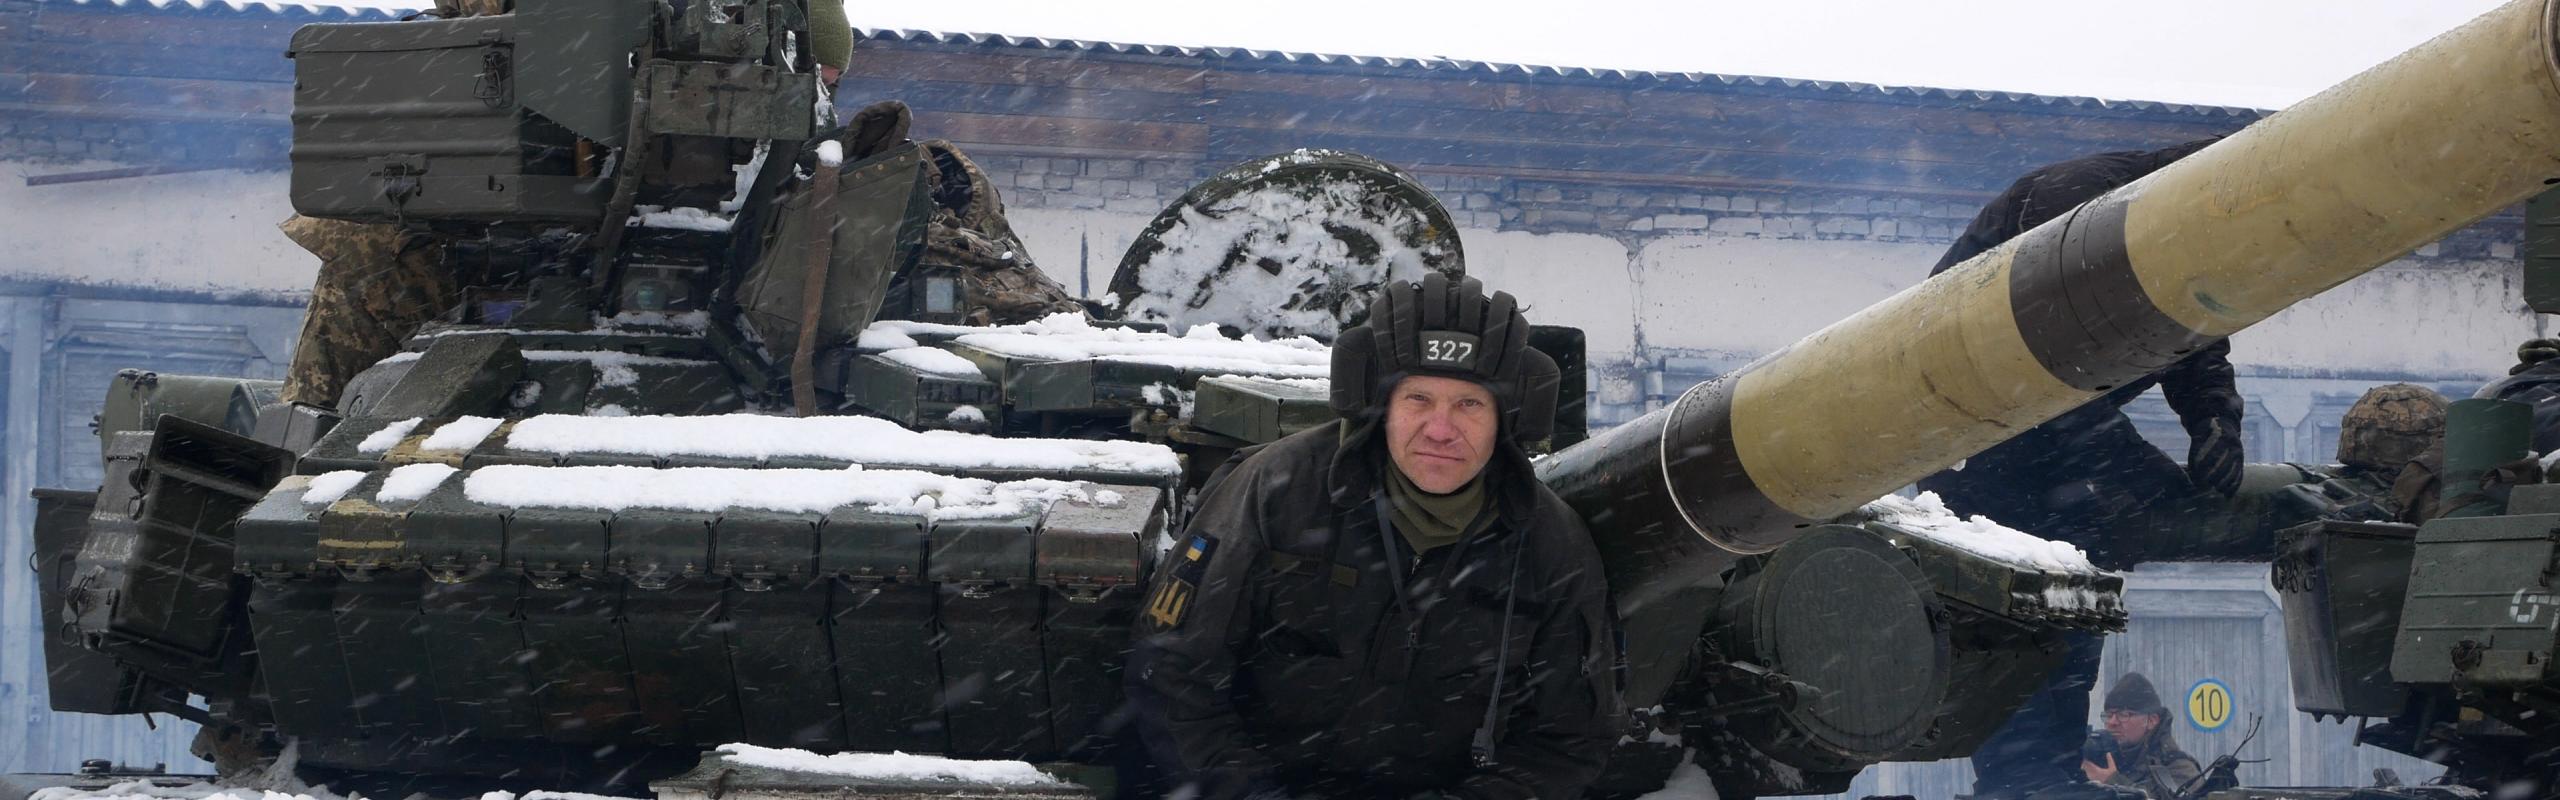 Un opérateur de chars de l'armée ukrainienne à Kharkiv se prépare à l'invasion russe.